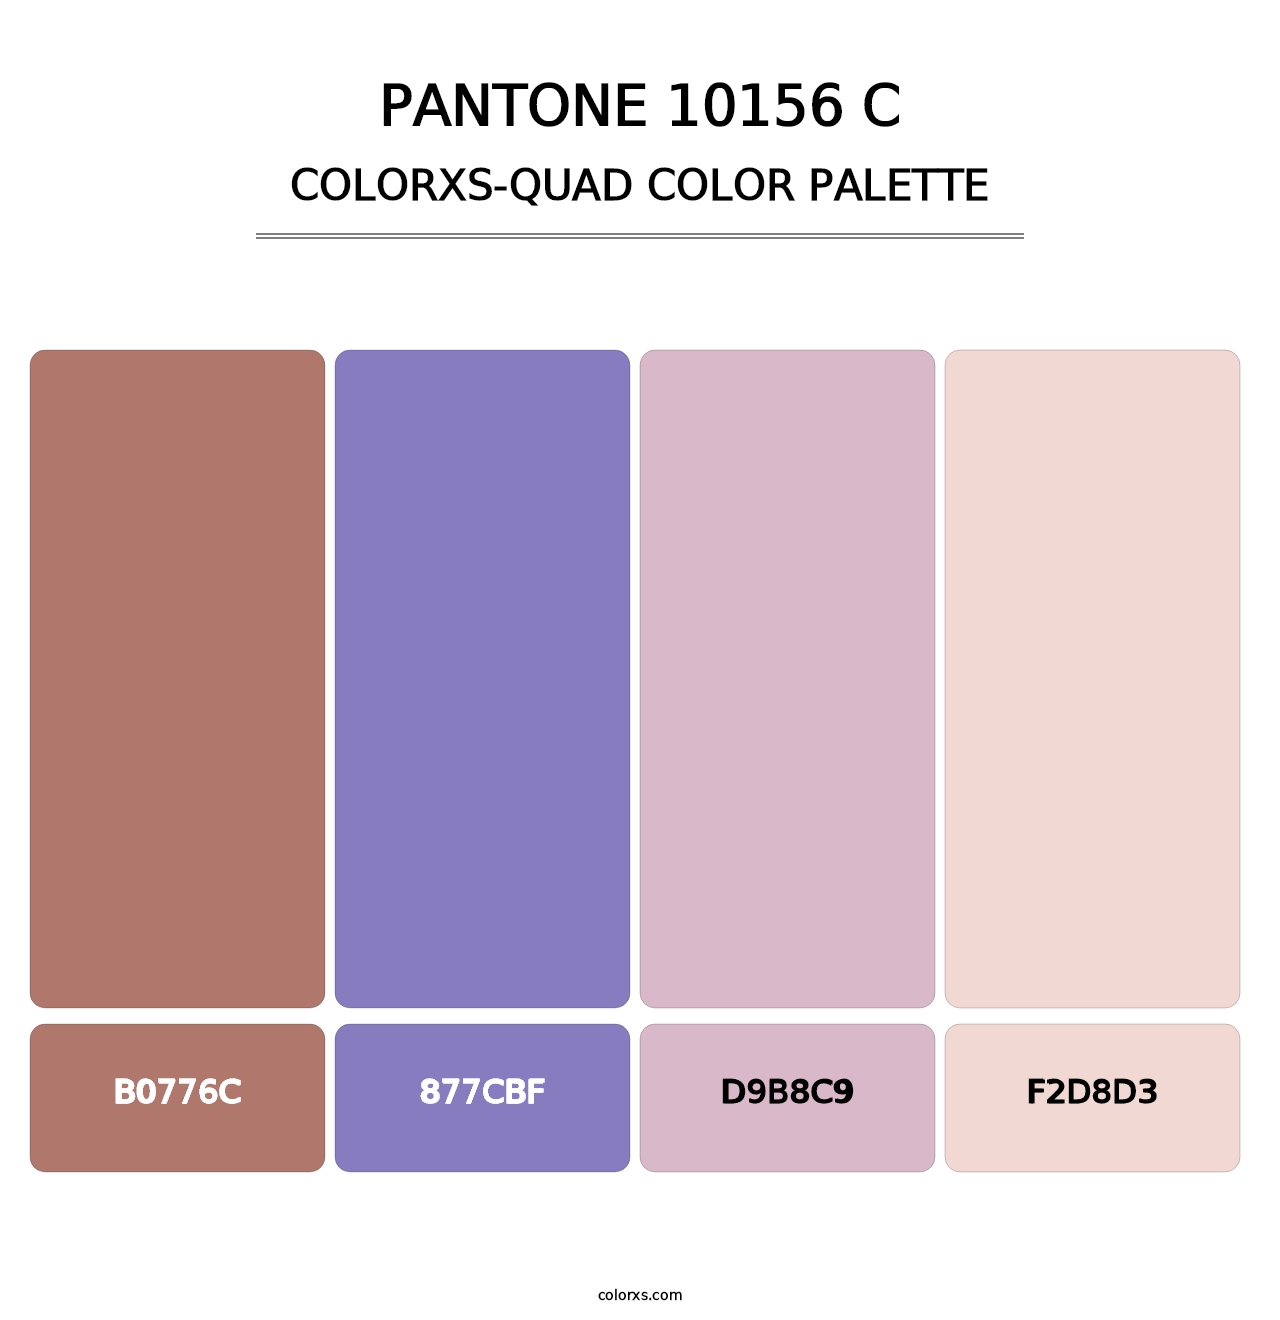 PANTONE 10156 C - Colorxs Quad Palette